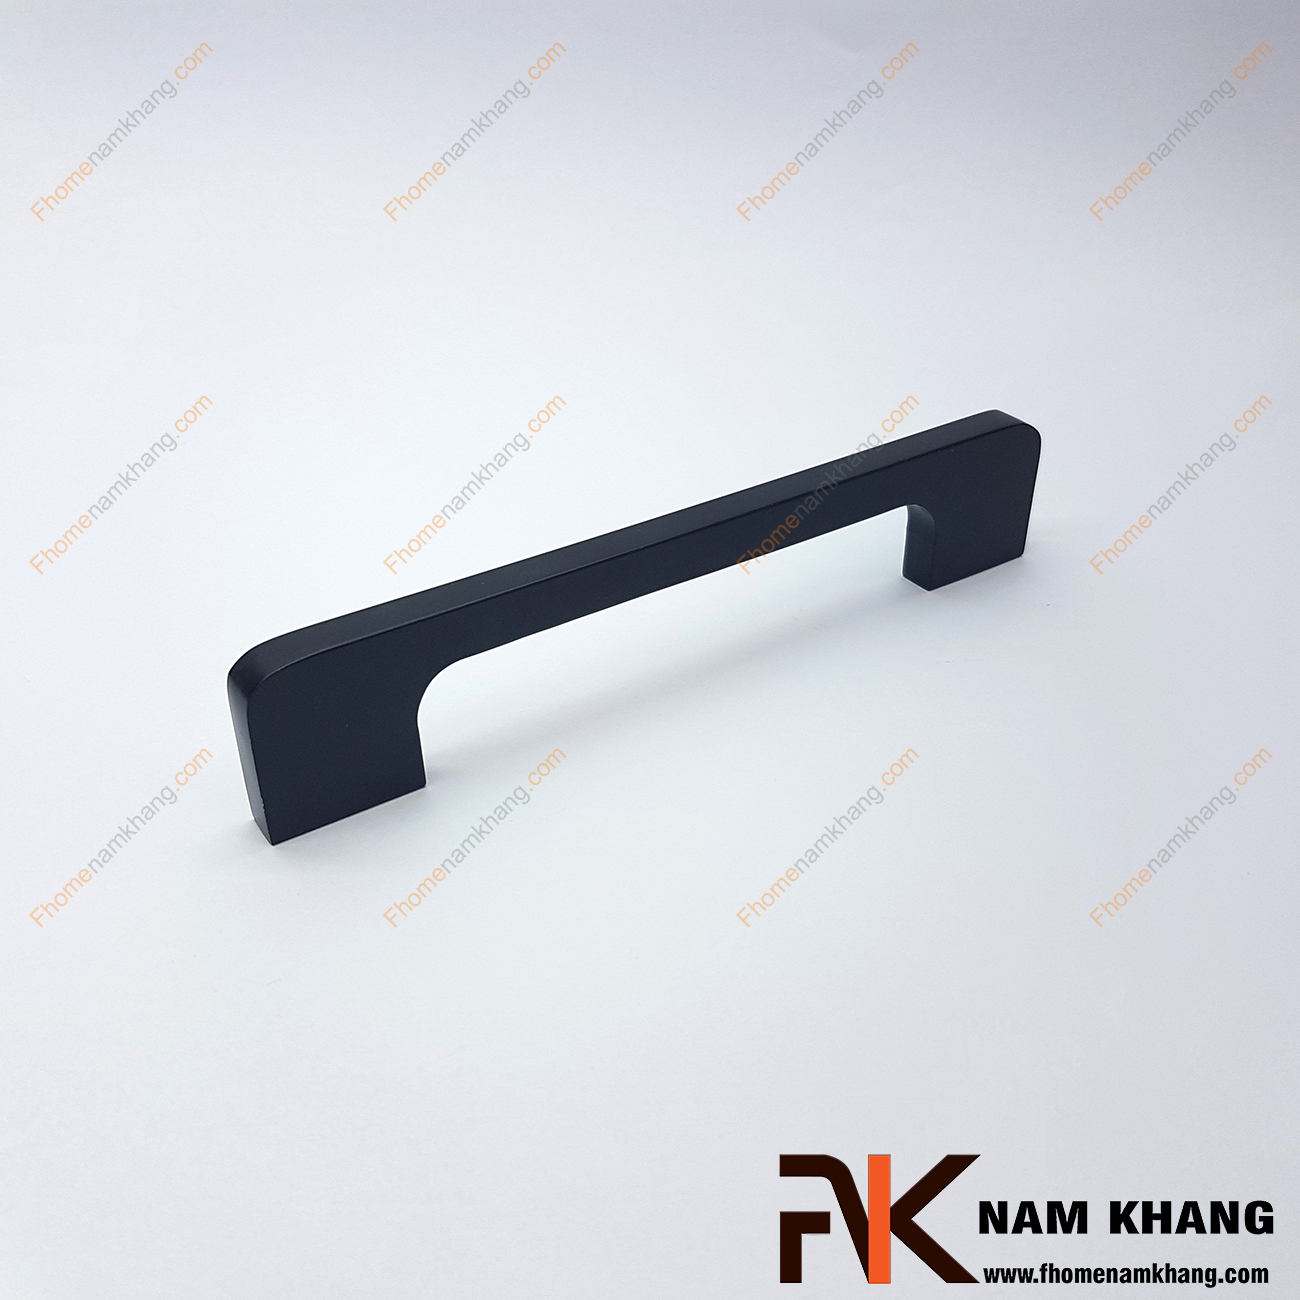  Tay cầm tủ nhôm NK116-D là thiết kế đặc biệt từ hợp kim nhôm cao cấp. Đây là sản phẩm sử dụng công nghệ anode nhôm để tạo được màu đen tuyệt đẹp và độ bền cực tốt